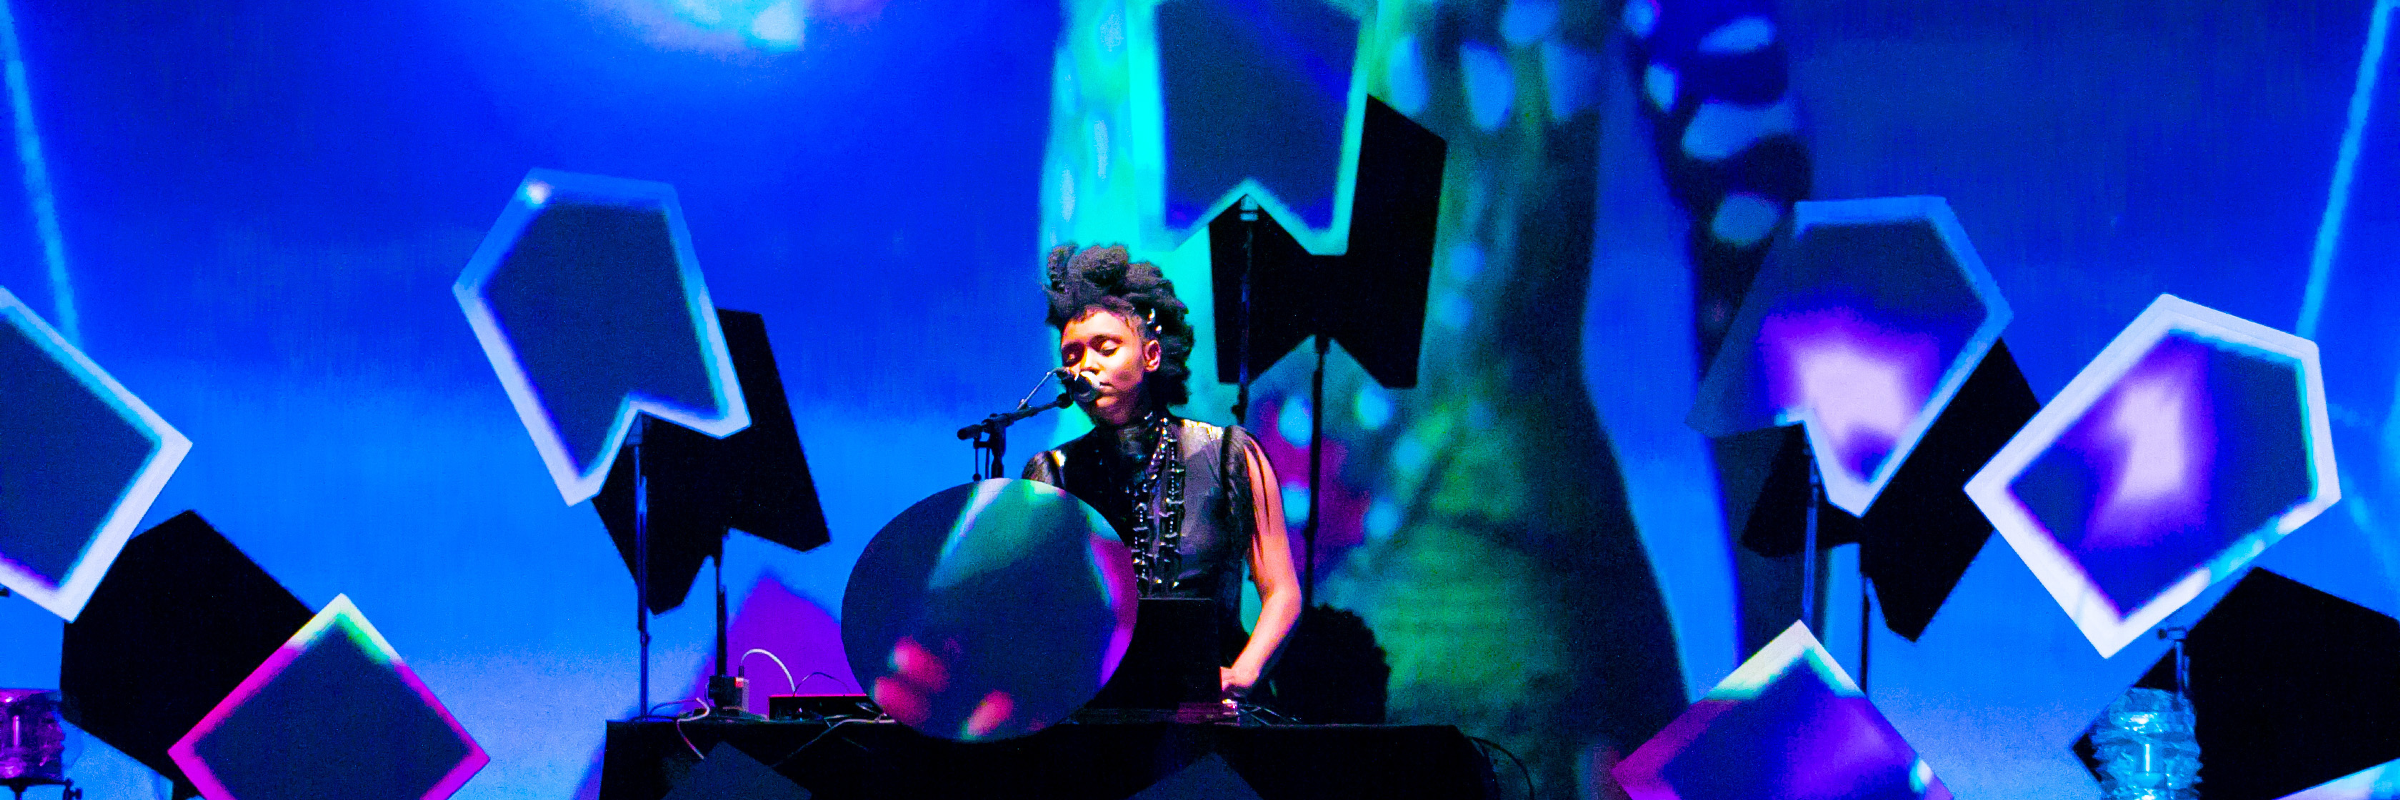 Alissassilla, DJ DJ en représentation à Paris - photo de couverture n° 1